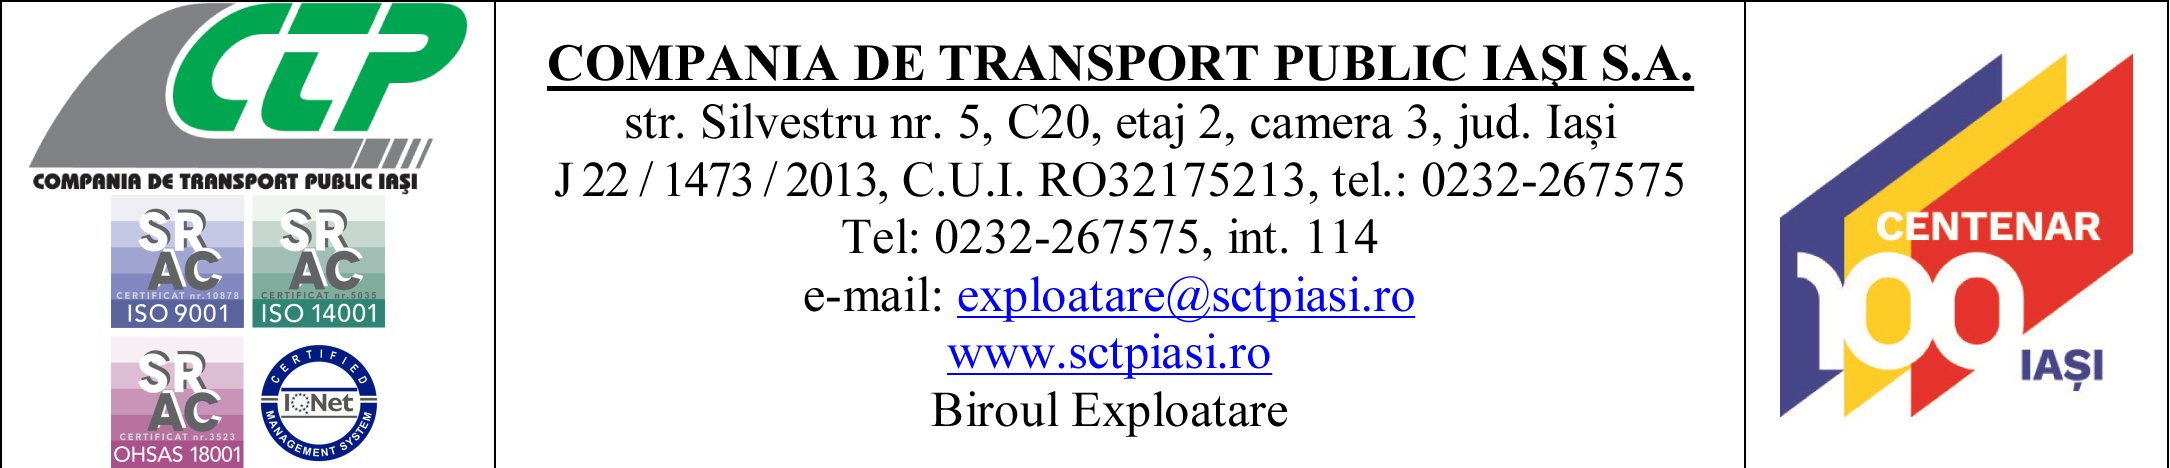  Compania de Transport Public Iași anunță condițiile de vizare a legitimațiilor de călătorie pentru pensionari